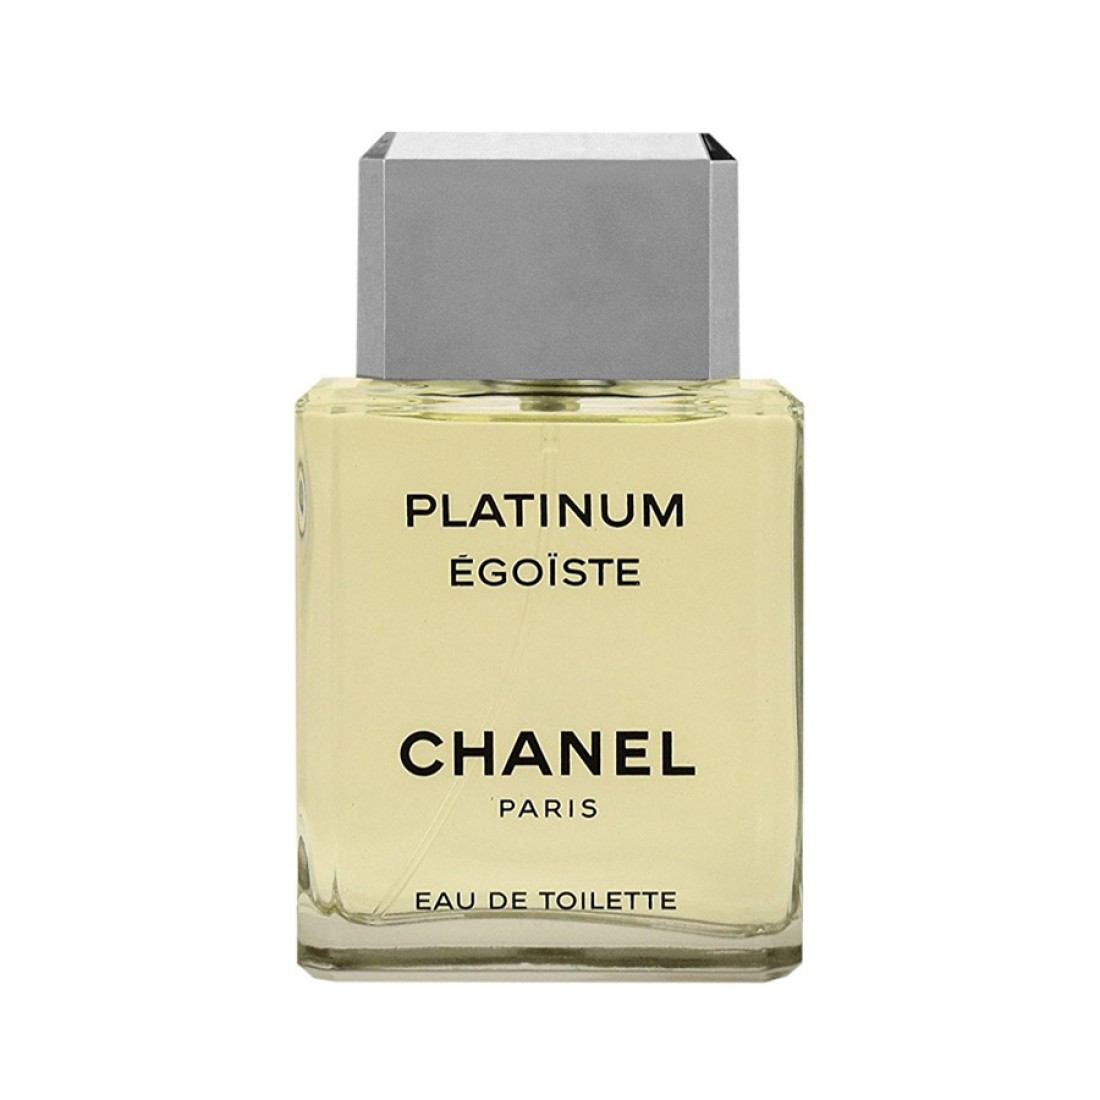 Buy Chanel Platinum Egoiste 100ml for men online